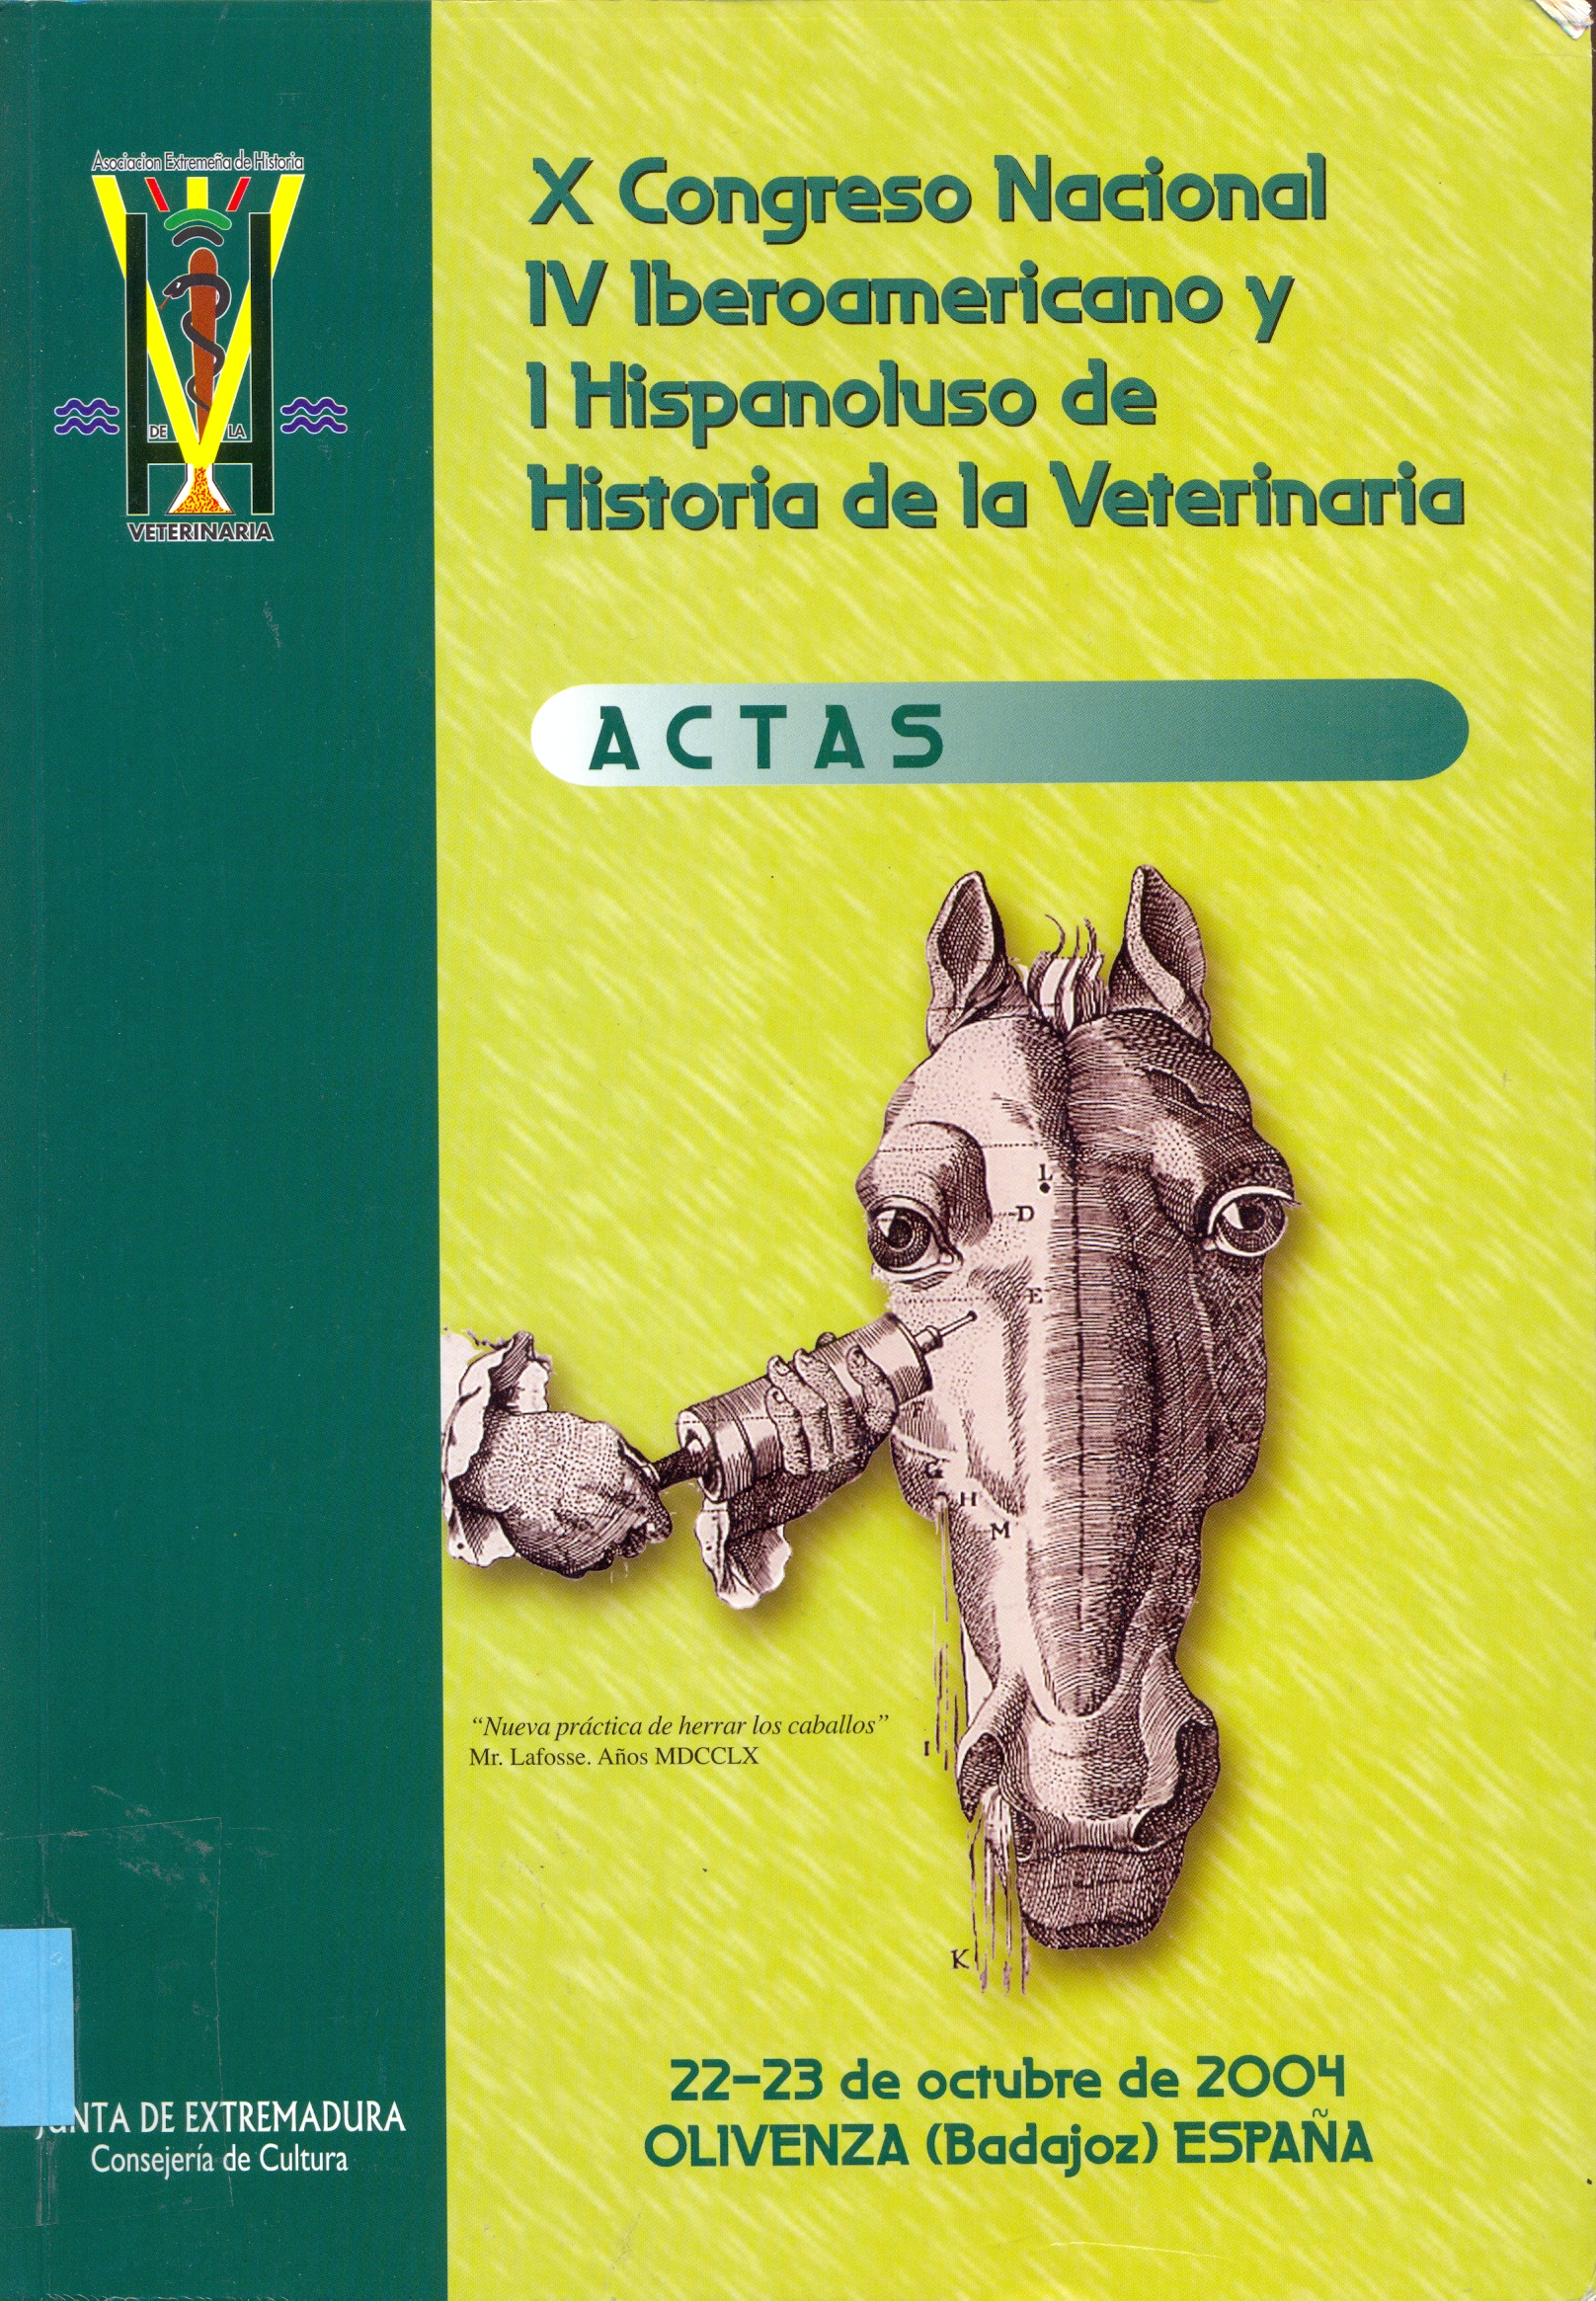 Imagen de portada del libro X Congreso Nacional, IV Iberoamericano y I Hispanoluso de Historia de la Veterinaria